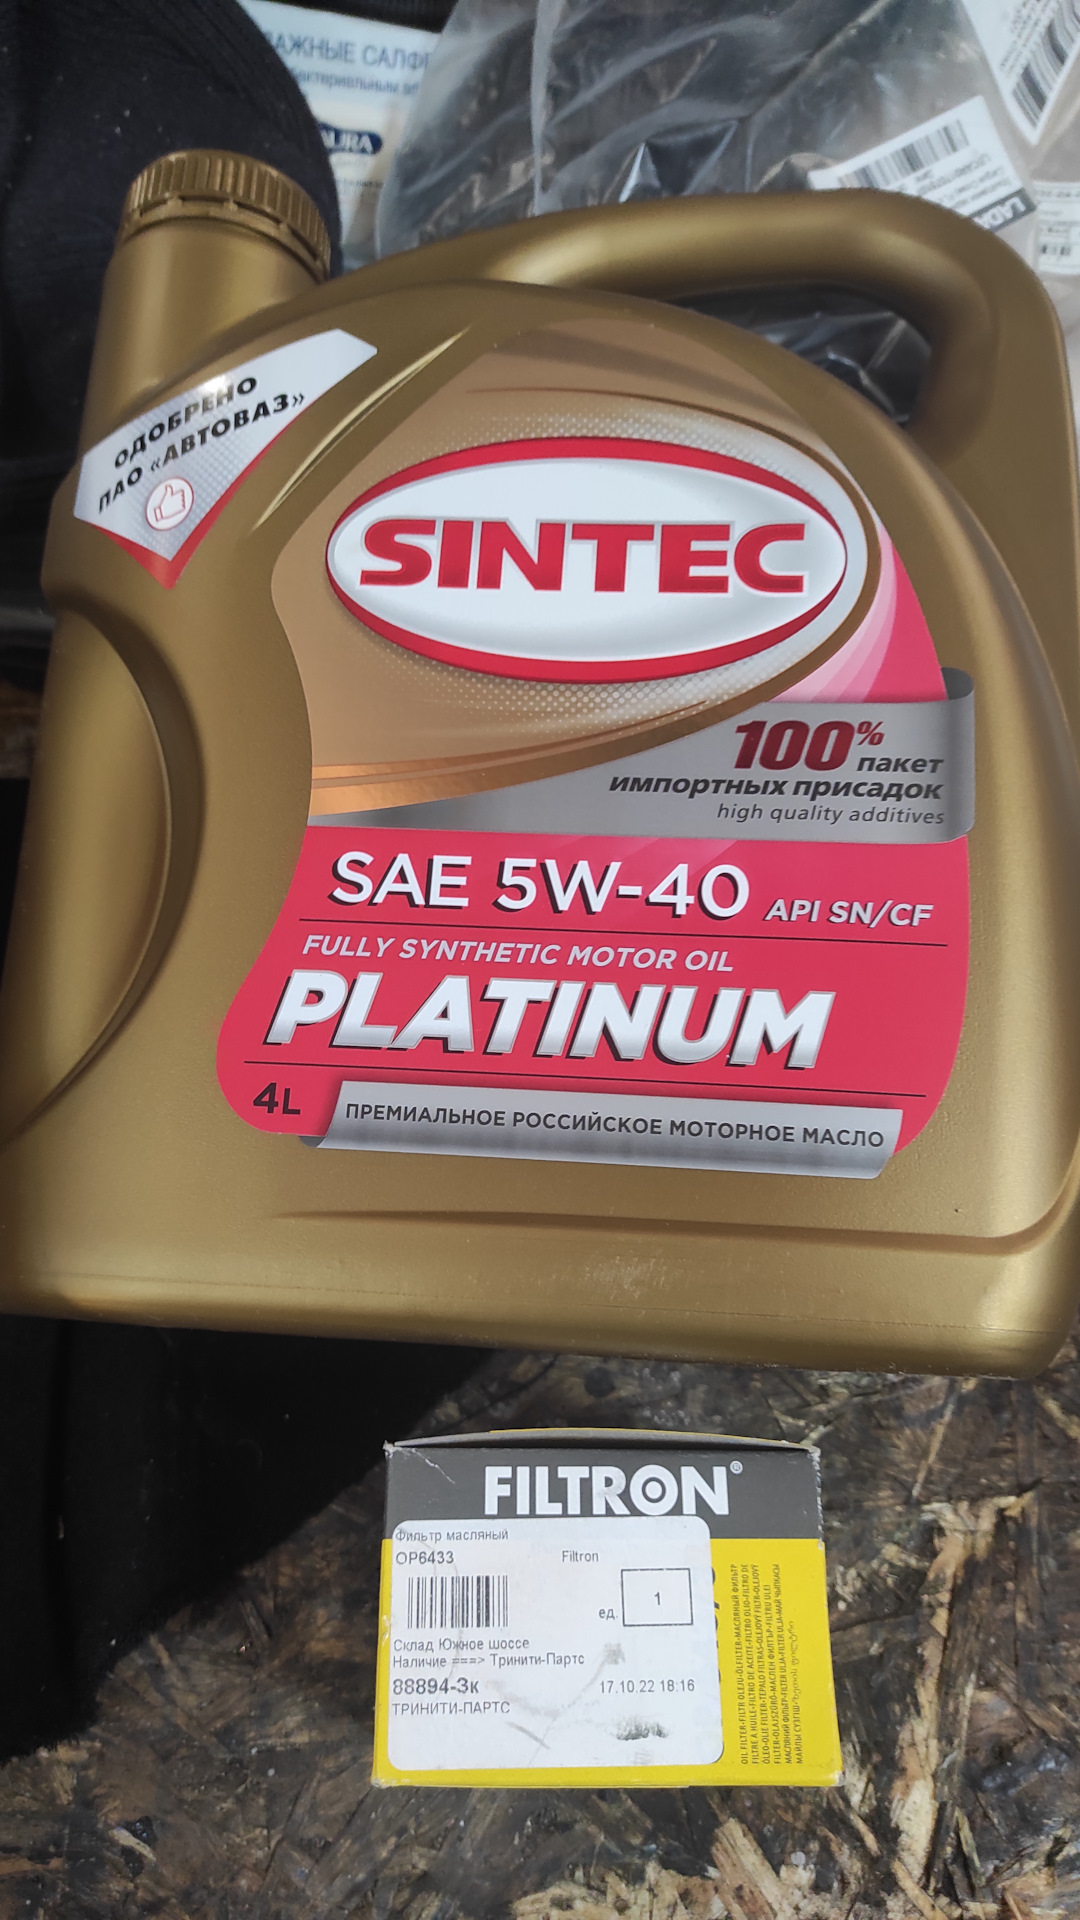 Ваз ларгус масло. Sintec Platinum 5w-40. Моторные масла для Ларгус.